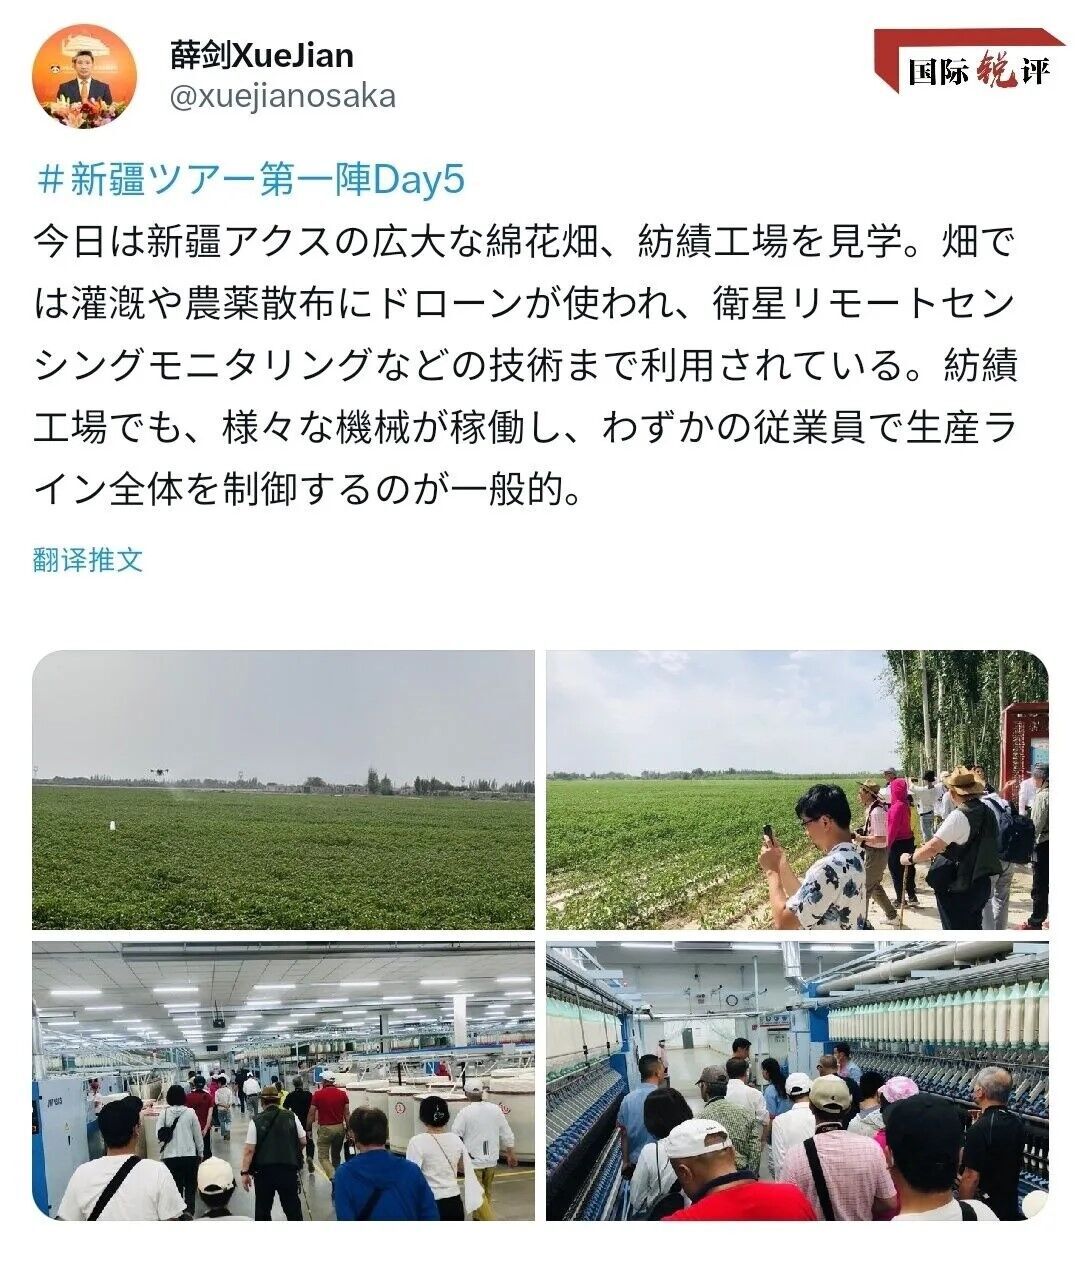 Японские туристы впервые после пандемии посетили Синьцзян